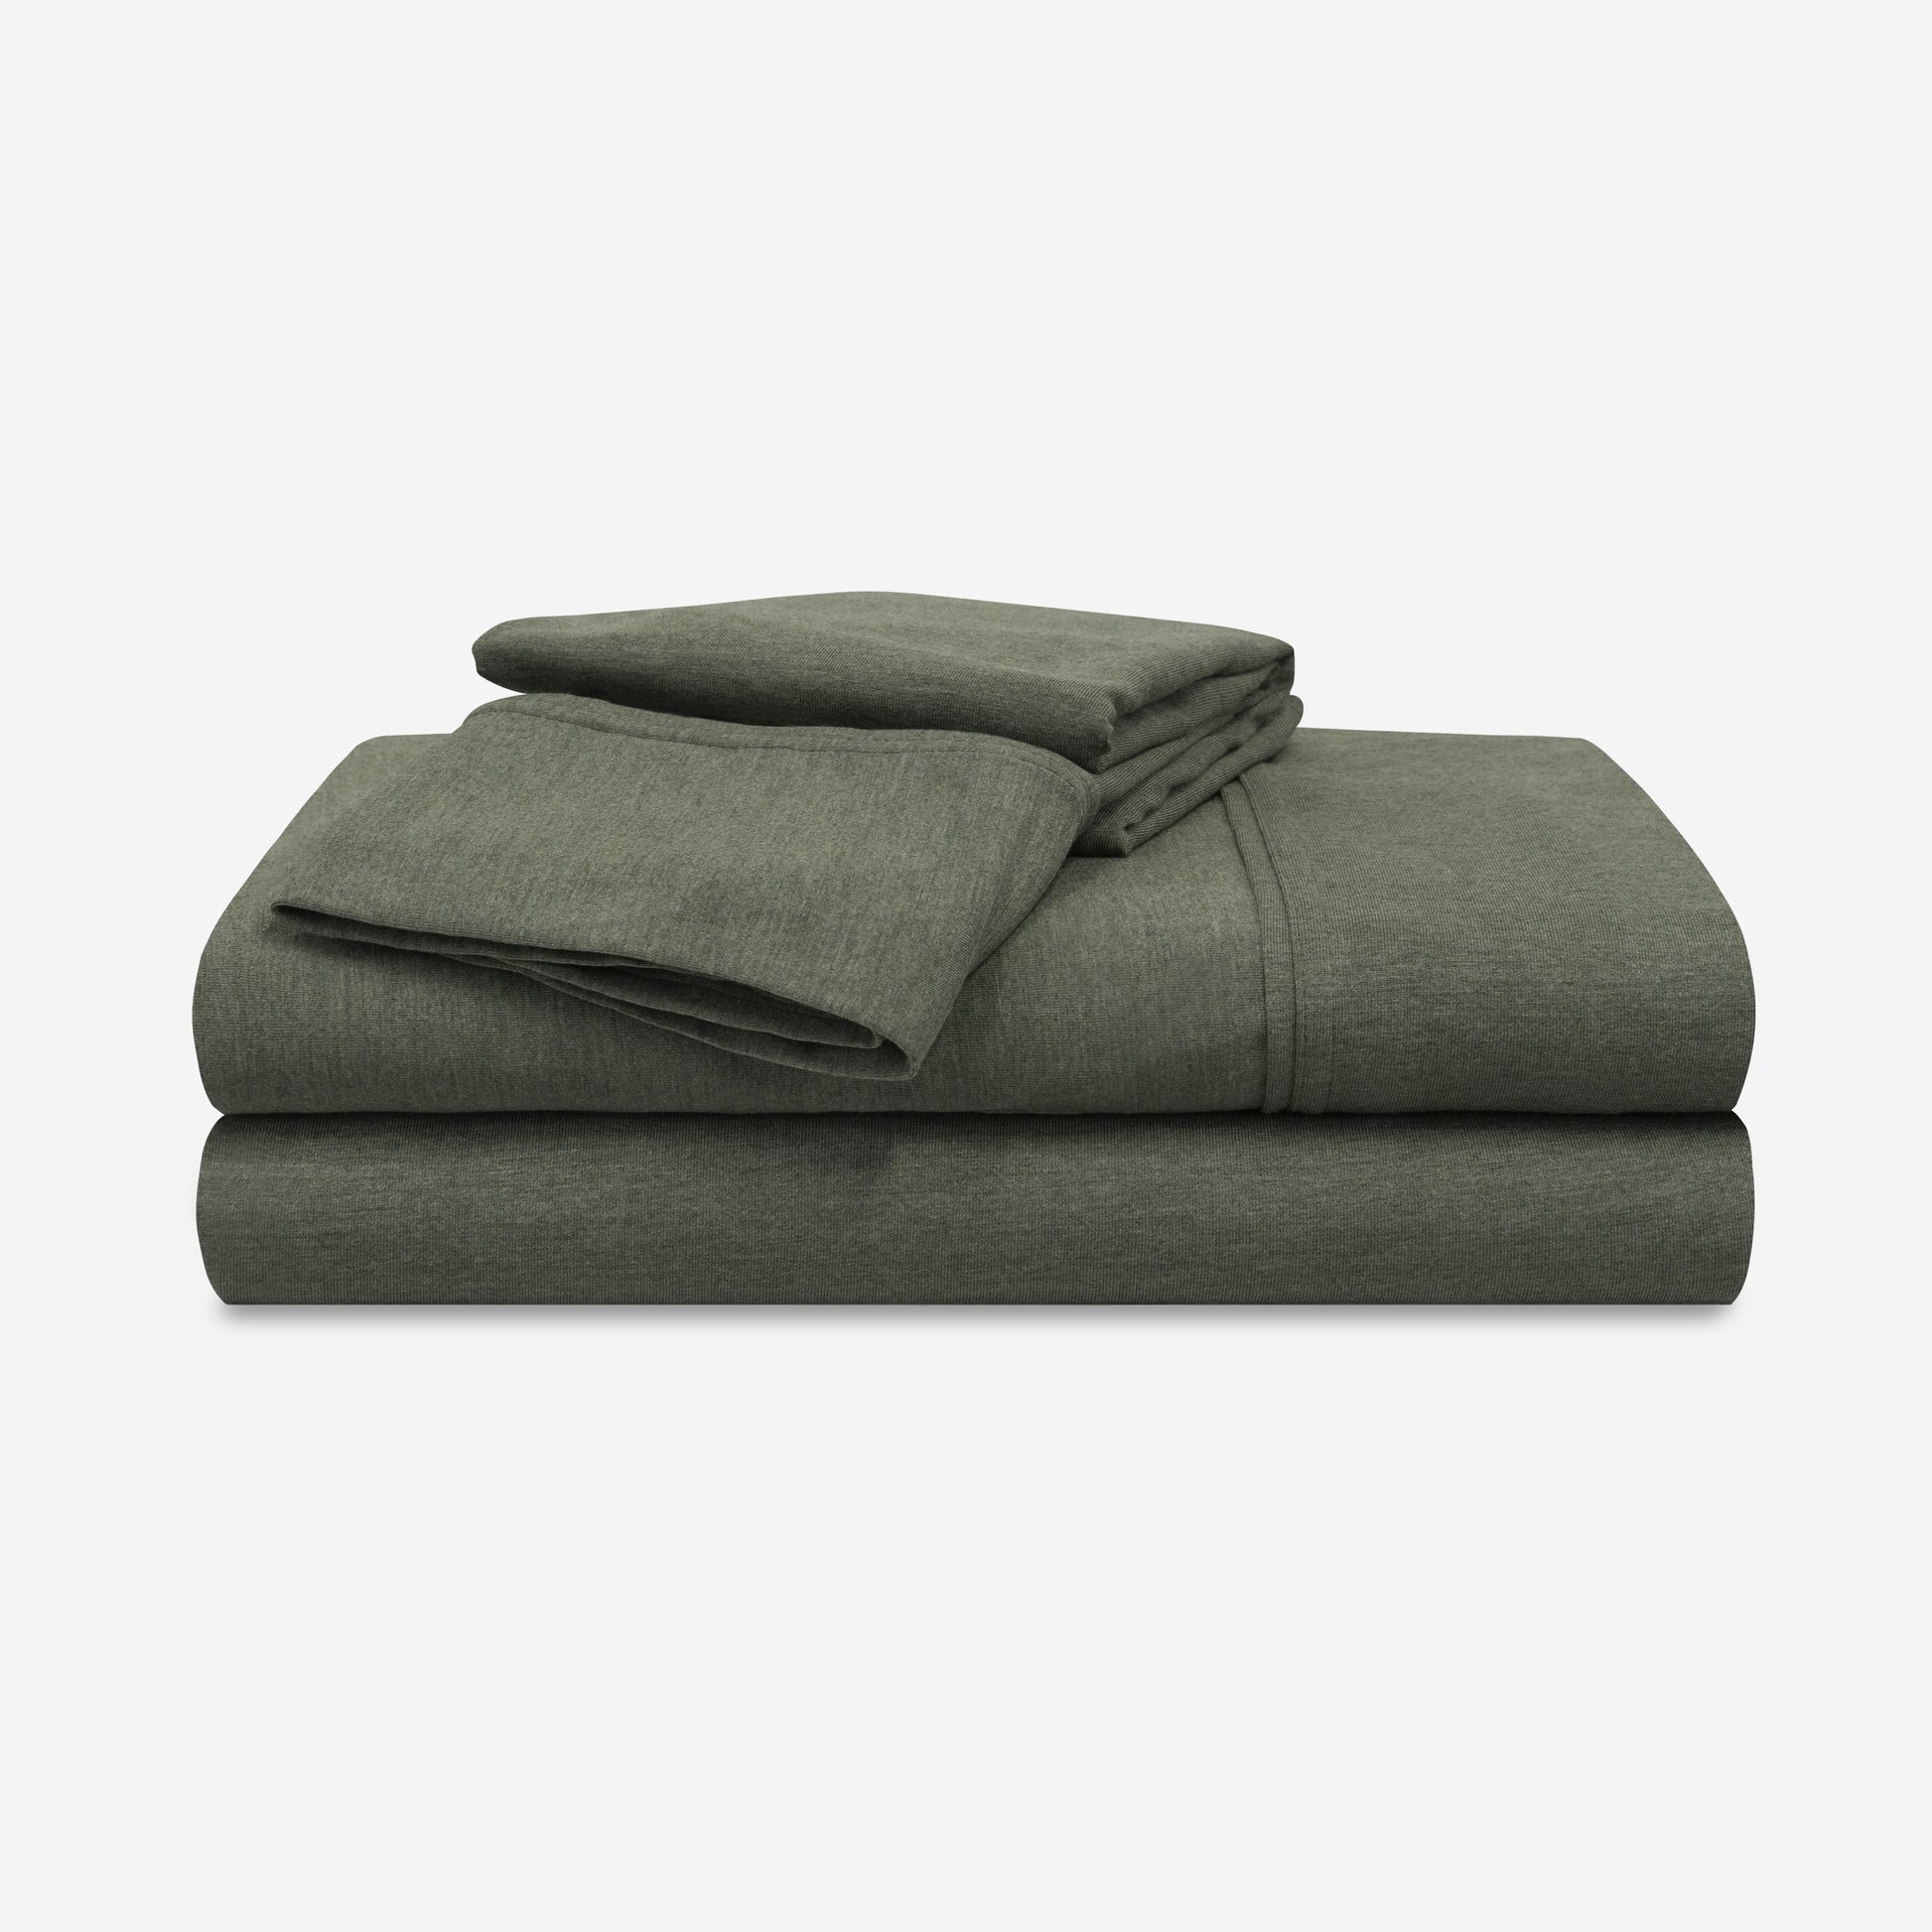 Bedgear Hyper-Wool Sheet Set - Image 2